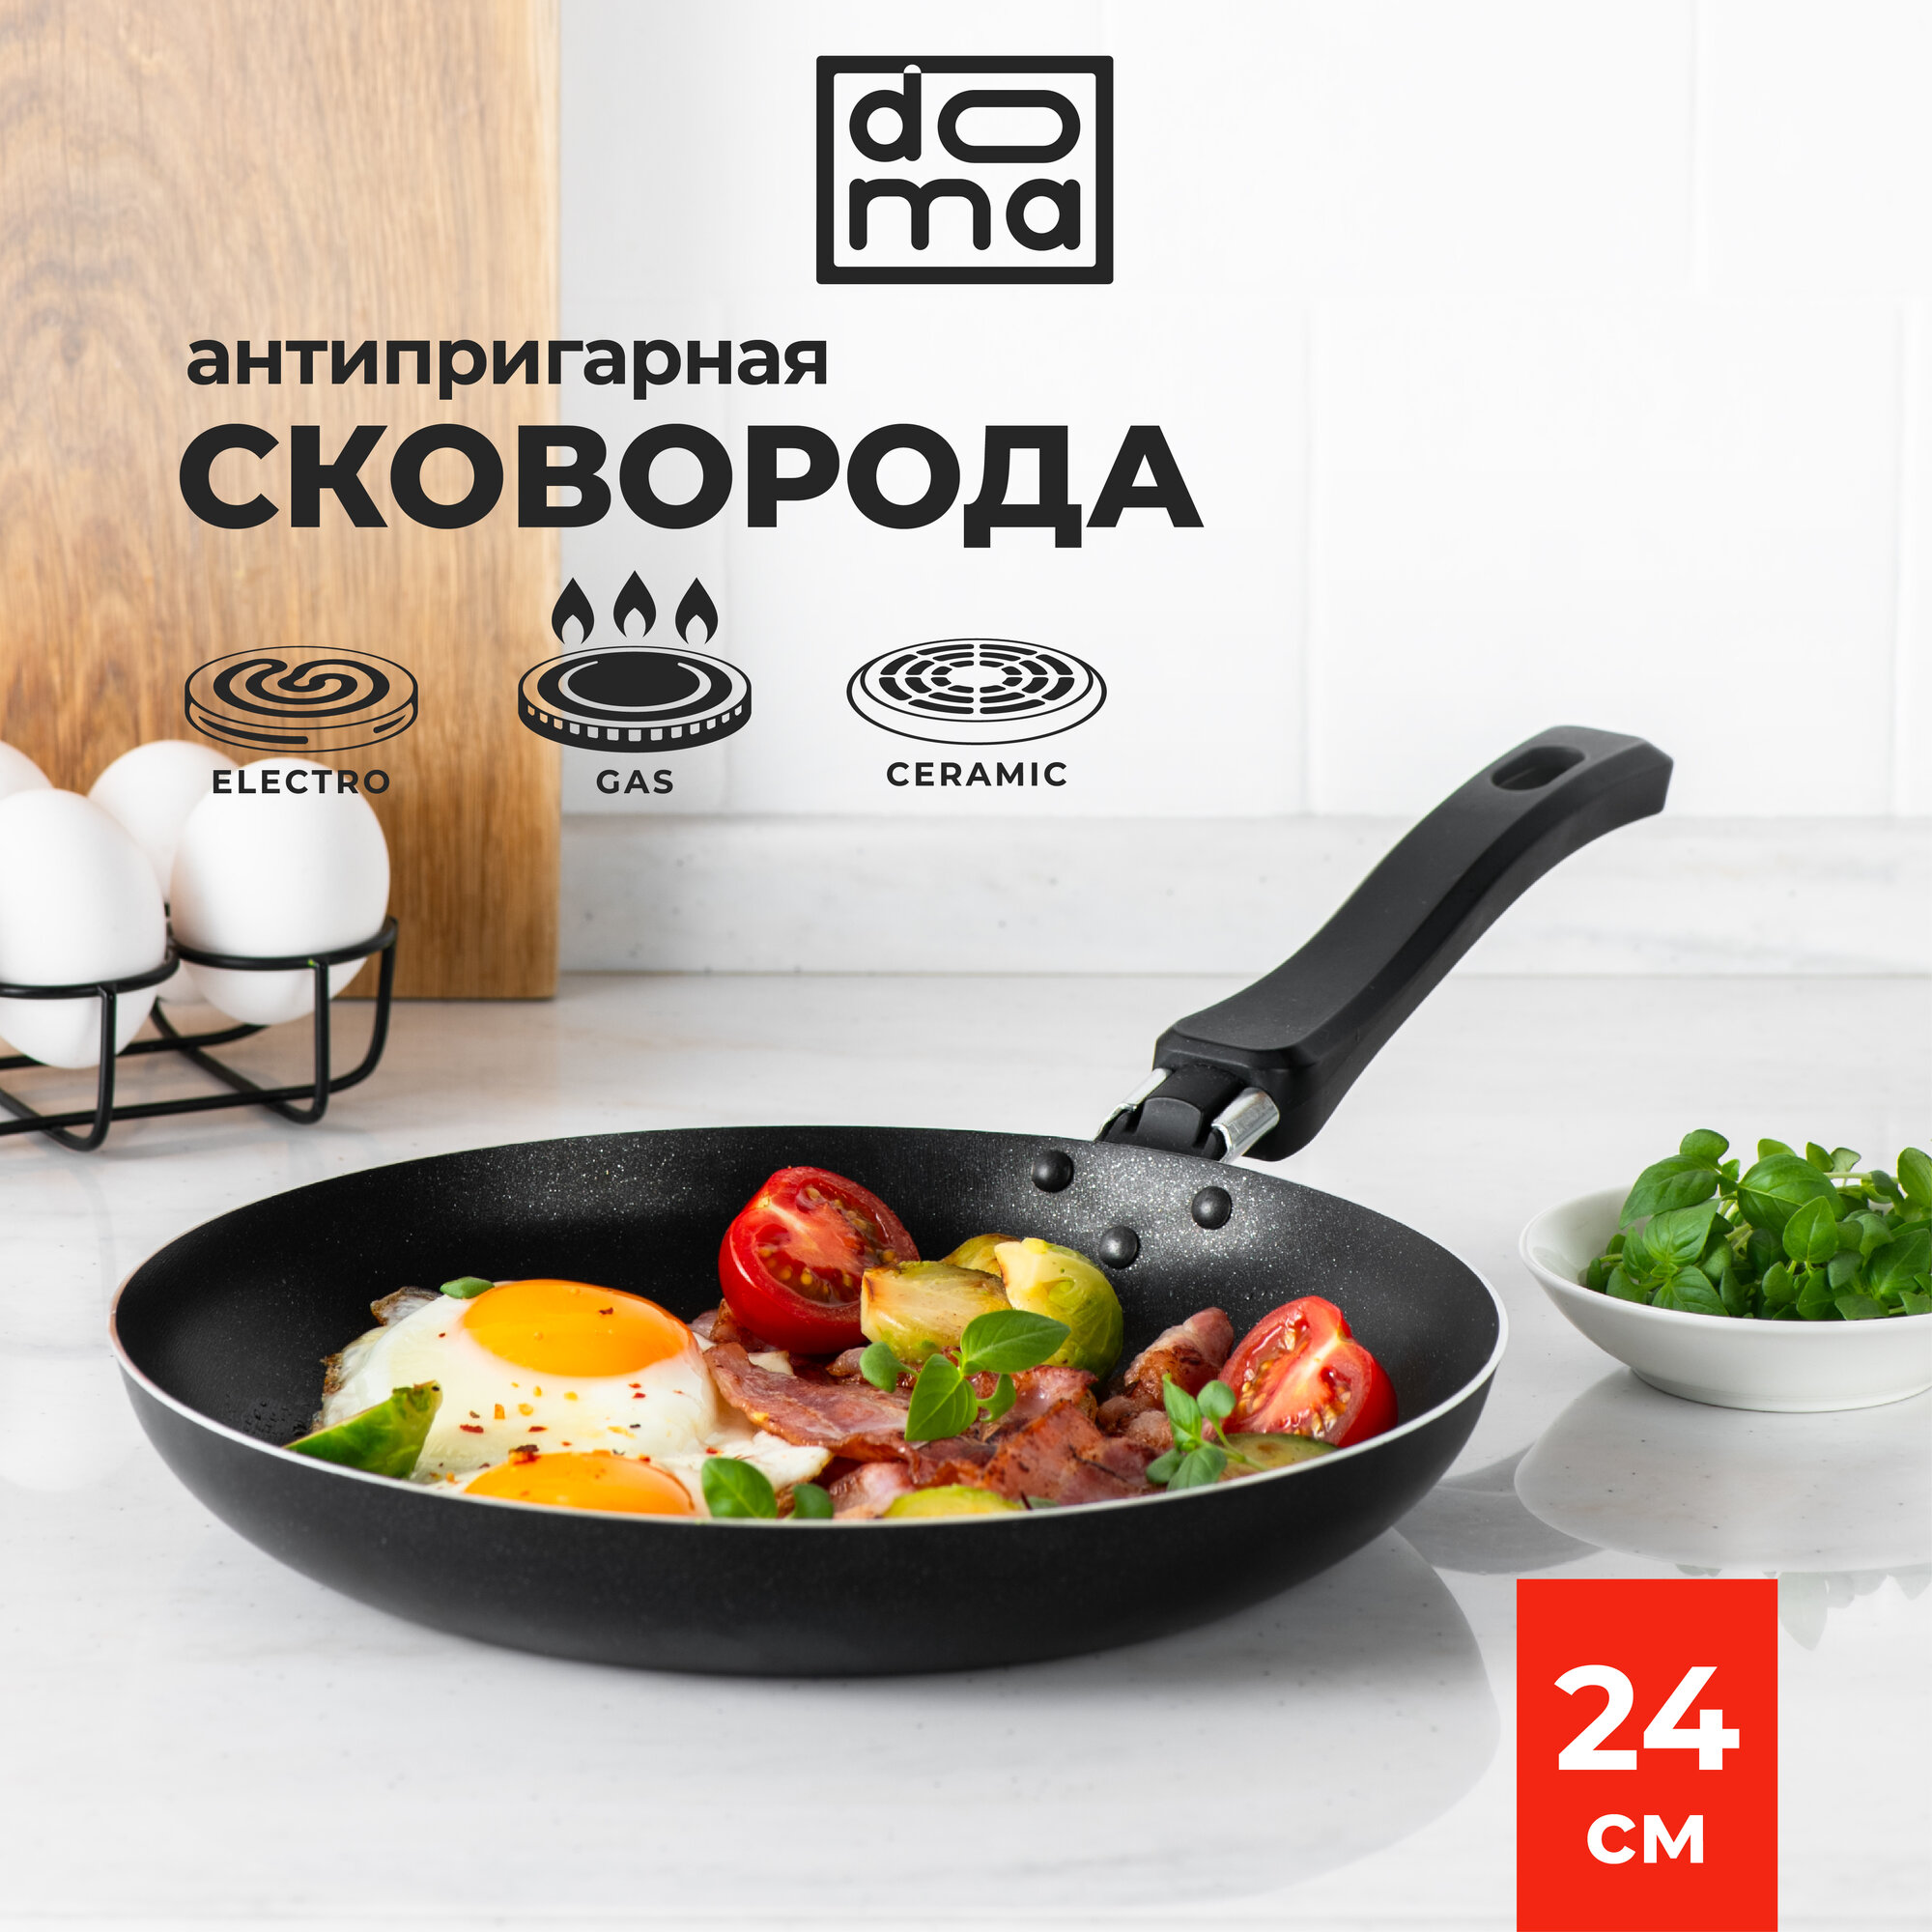 Сковорода Doma Constant Promo 24см